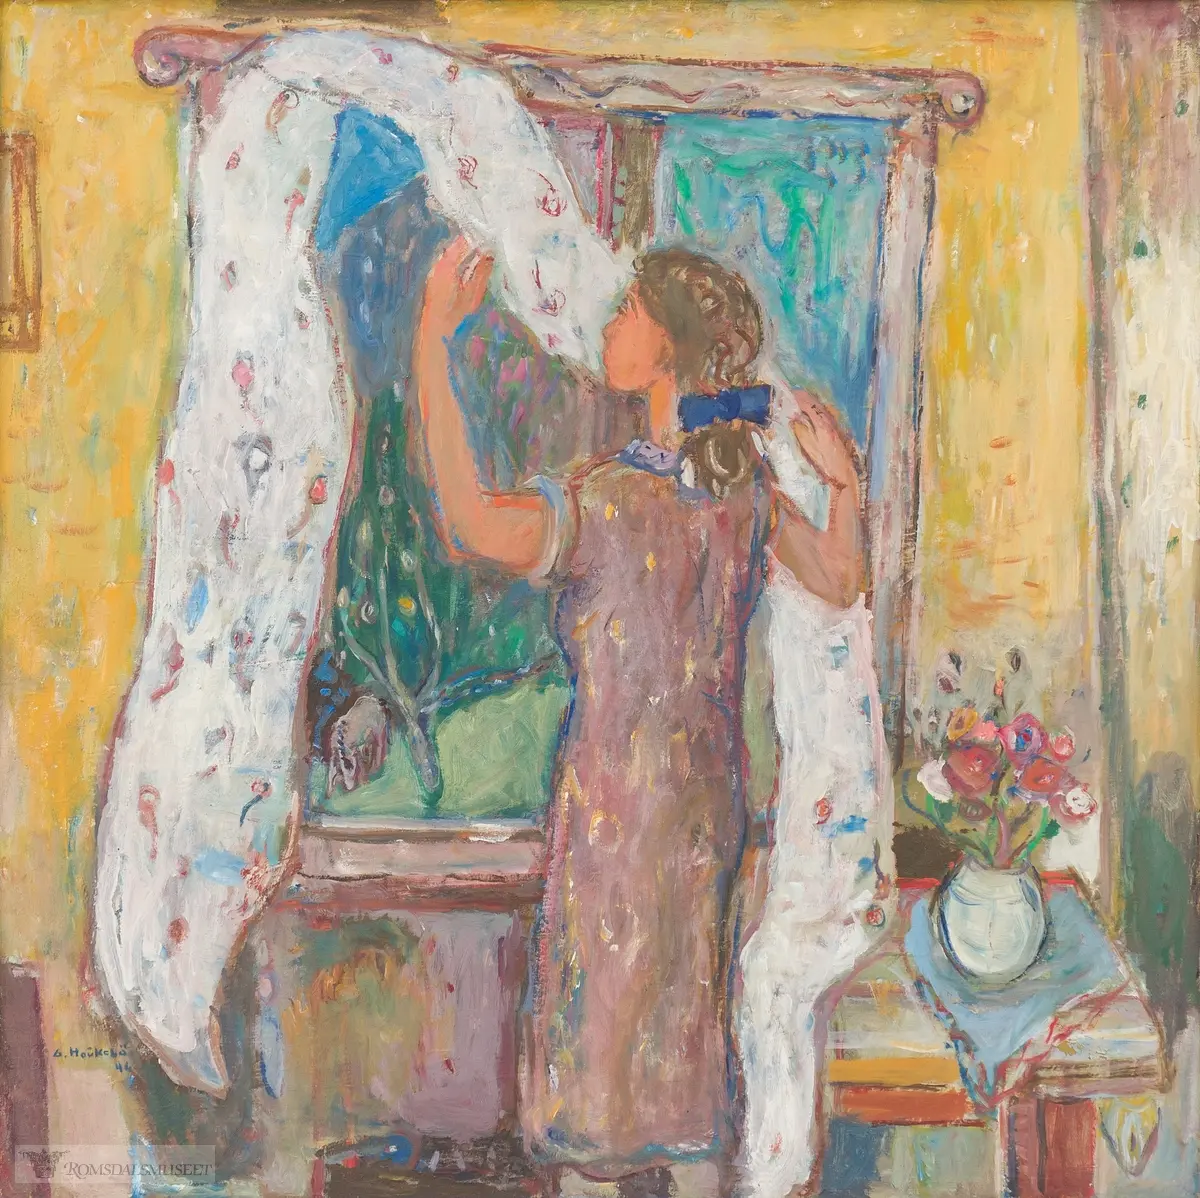 En kvinne henger opp en lys gardin i et vindu. utenfor kan en frodig hage sees. Ved kvinnens høyre side, et lite bord med en hvit vase med sommerblomster i.